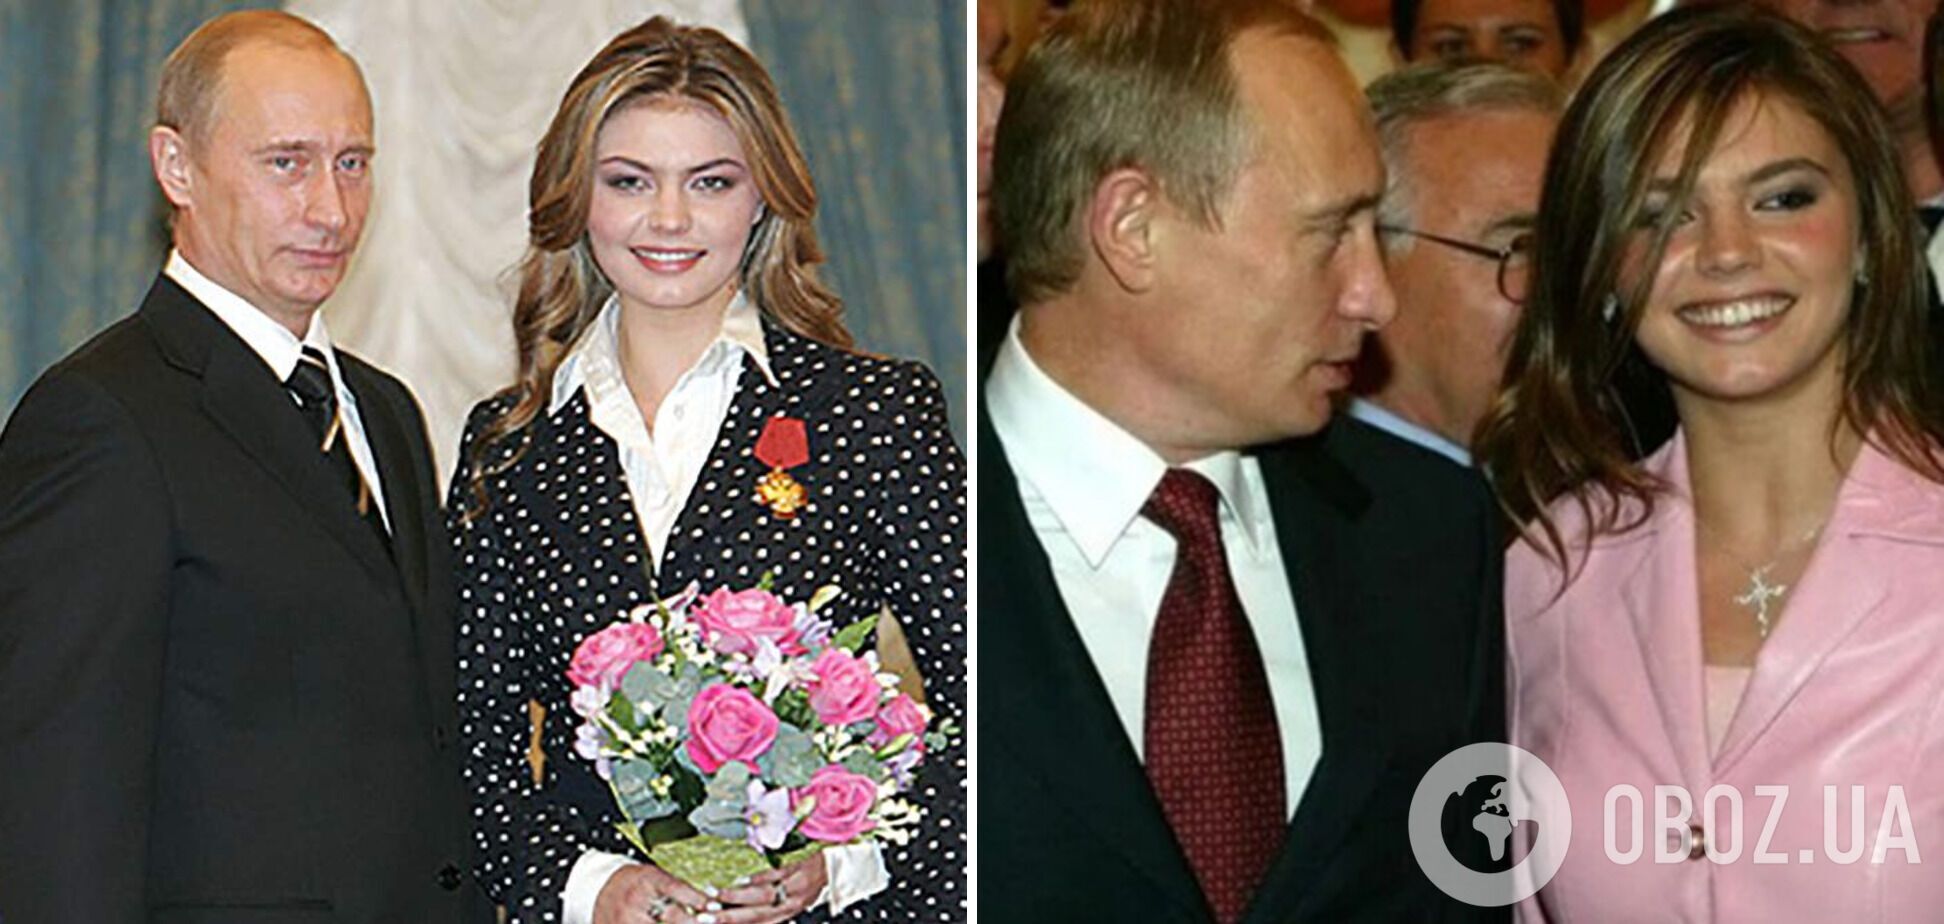 Предполагают, что Путин прилетел в Сочи, чтобы поздравить Кабаеву с днем рождения